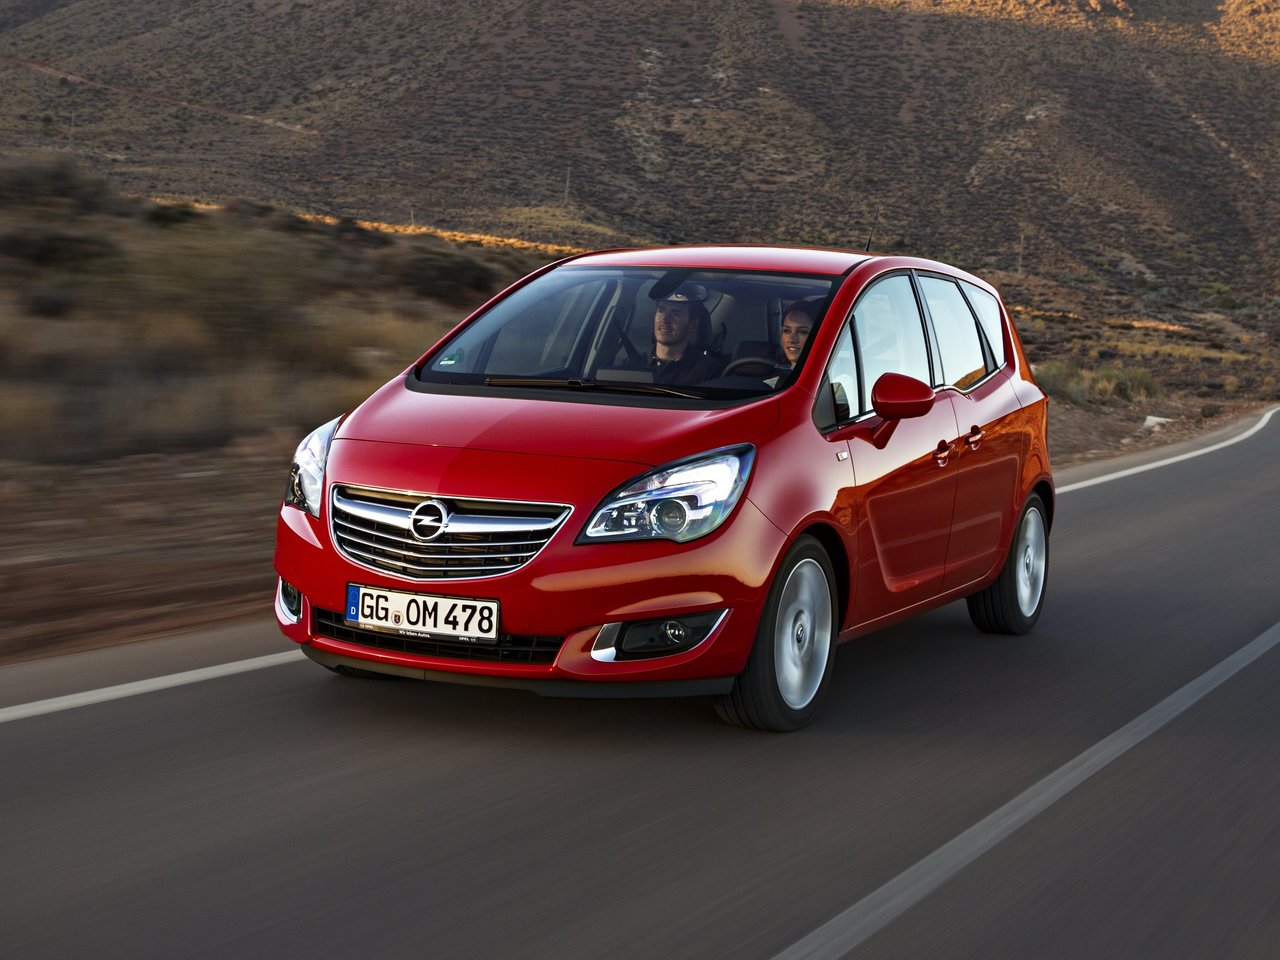 Снижаем расход Opel Meriva на топливо, устанавливаем ГБО